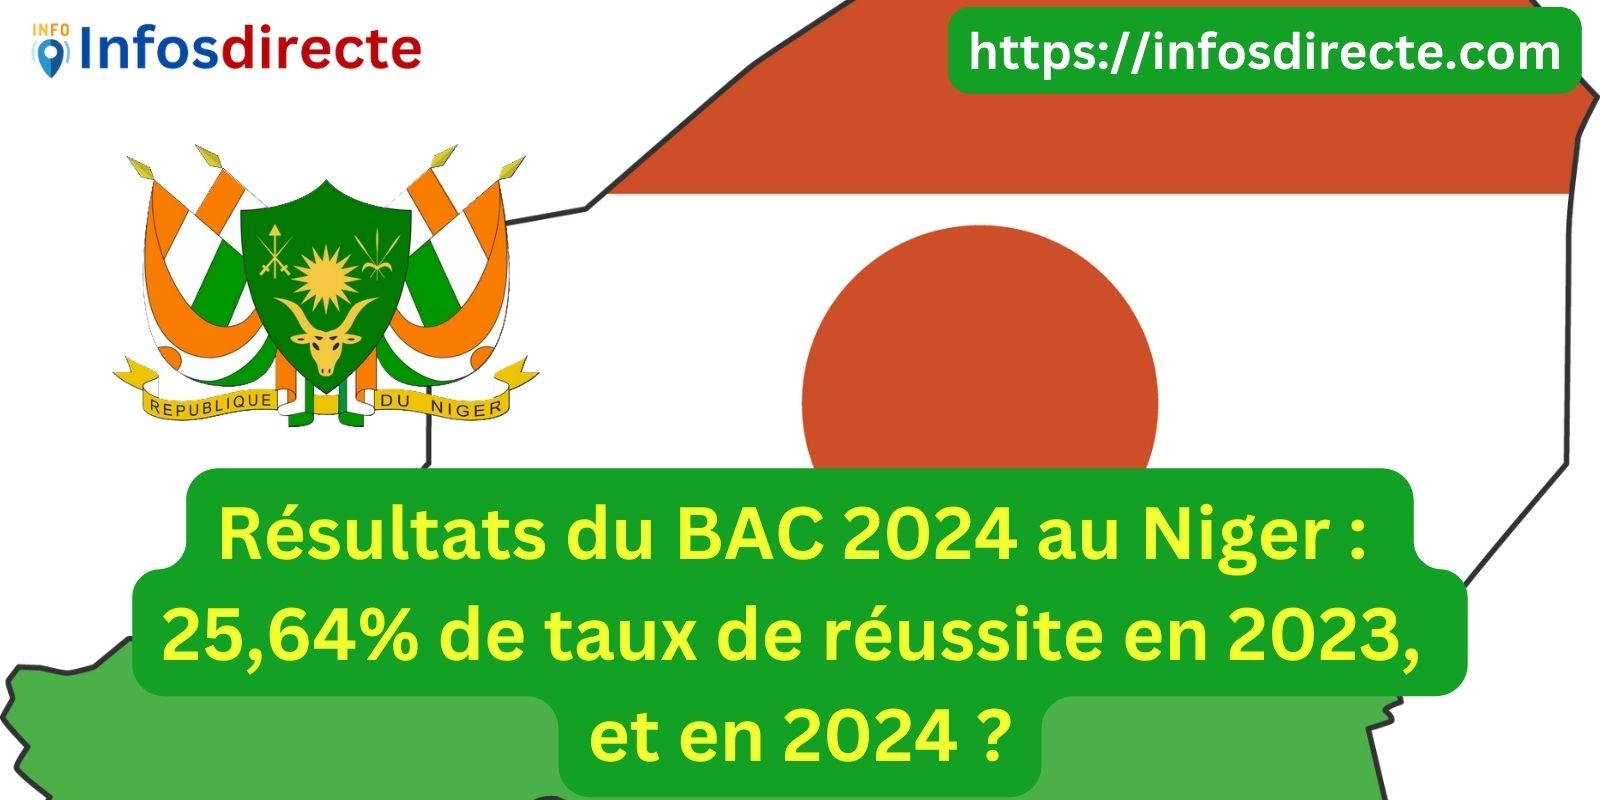 Résultats du BAC 2024 au Niger : 25,64% de taux de réussite en 2023, et en 2024 ?